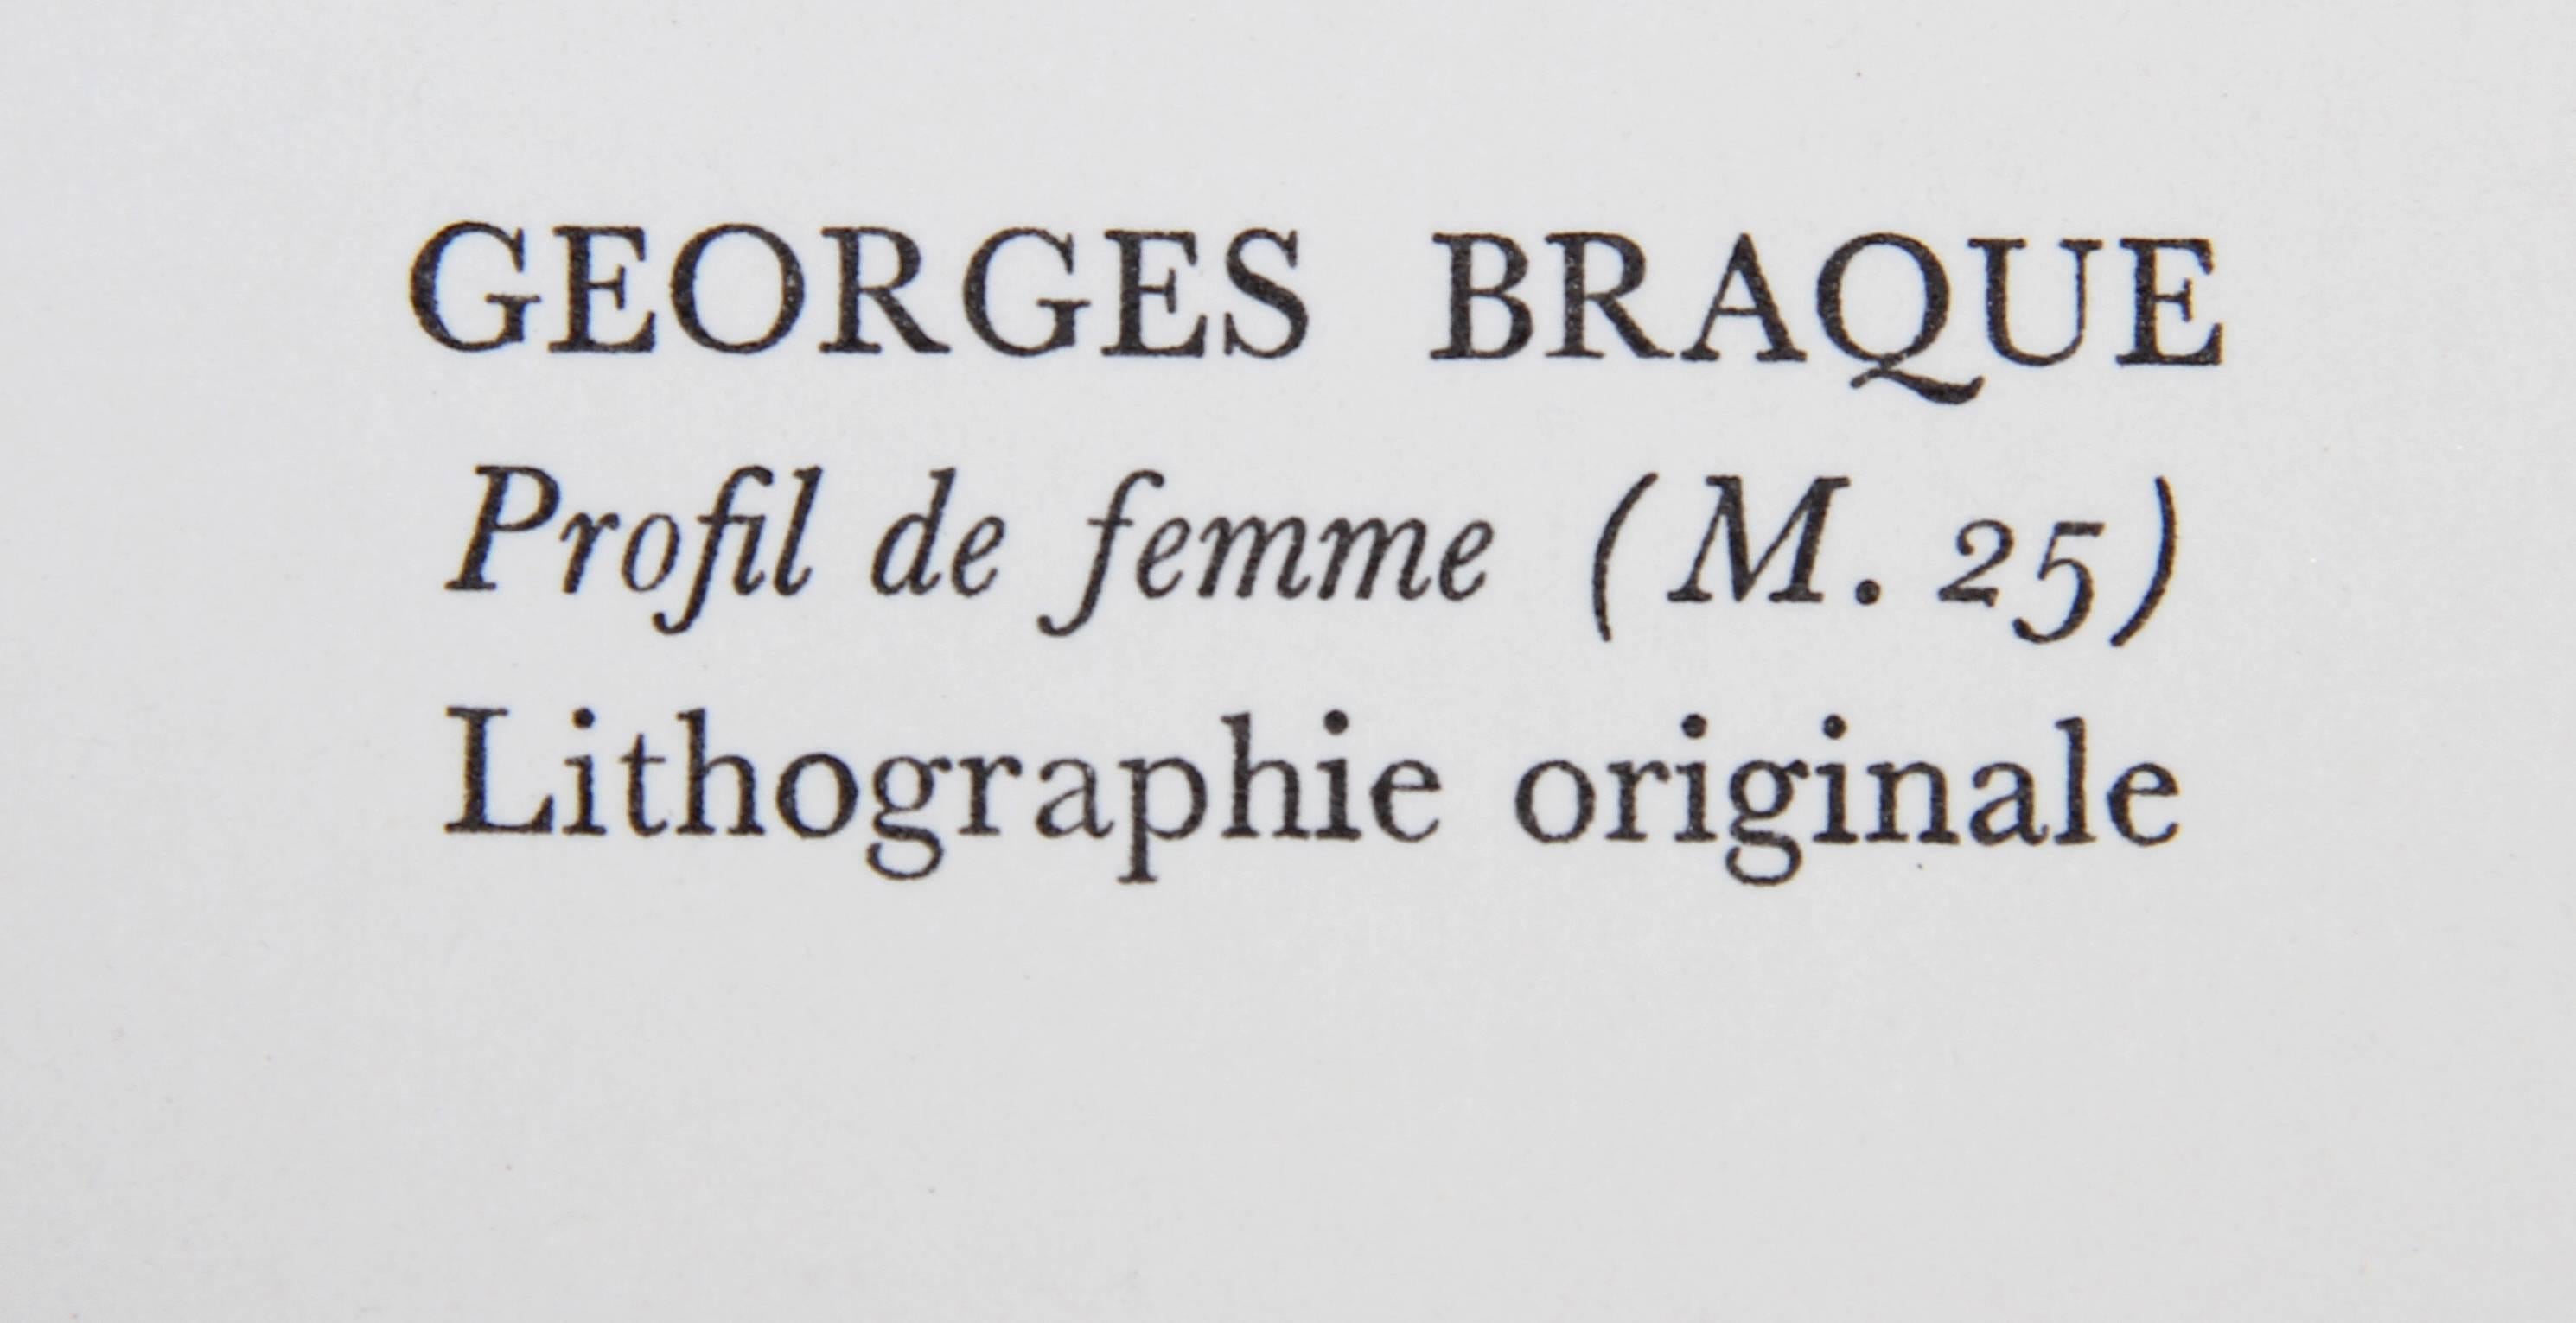 Profil de Femme from Souvenirs de Portraits d'Artistes by Georges Braque 1